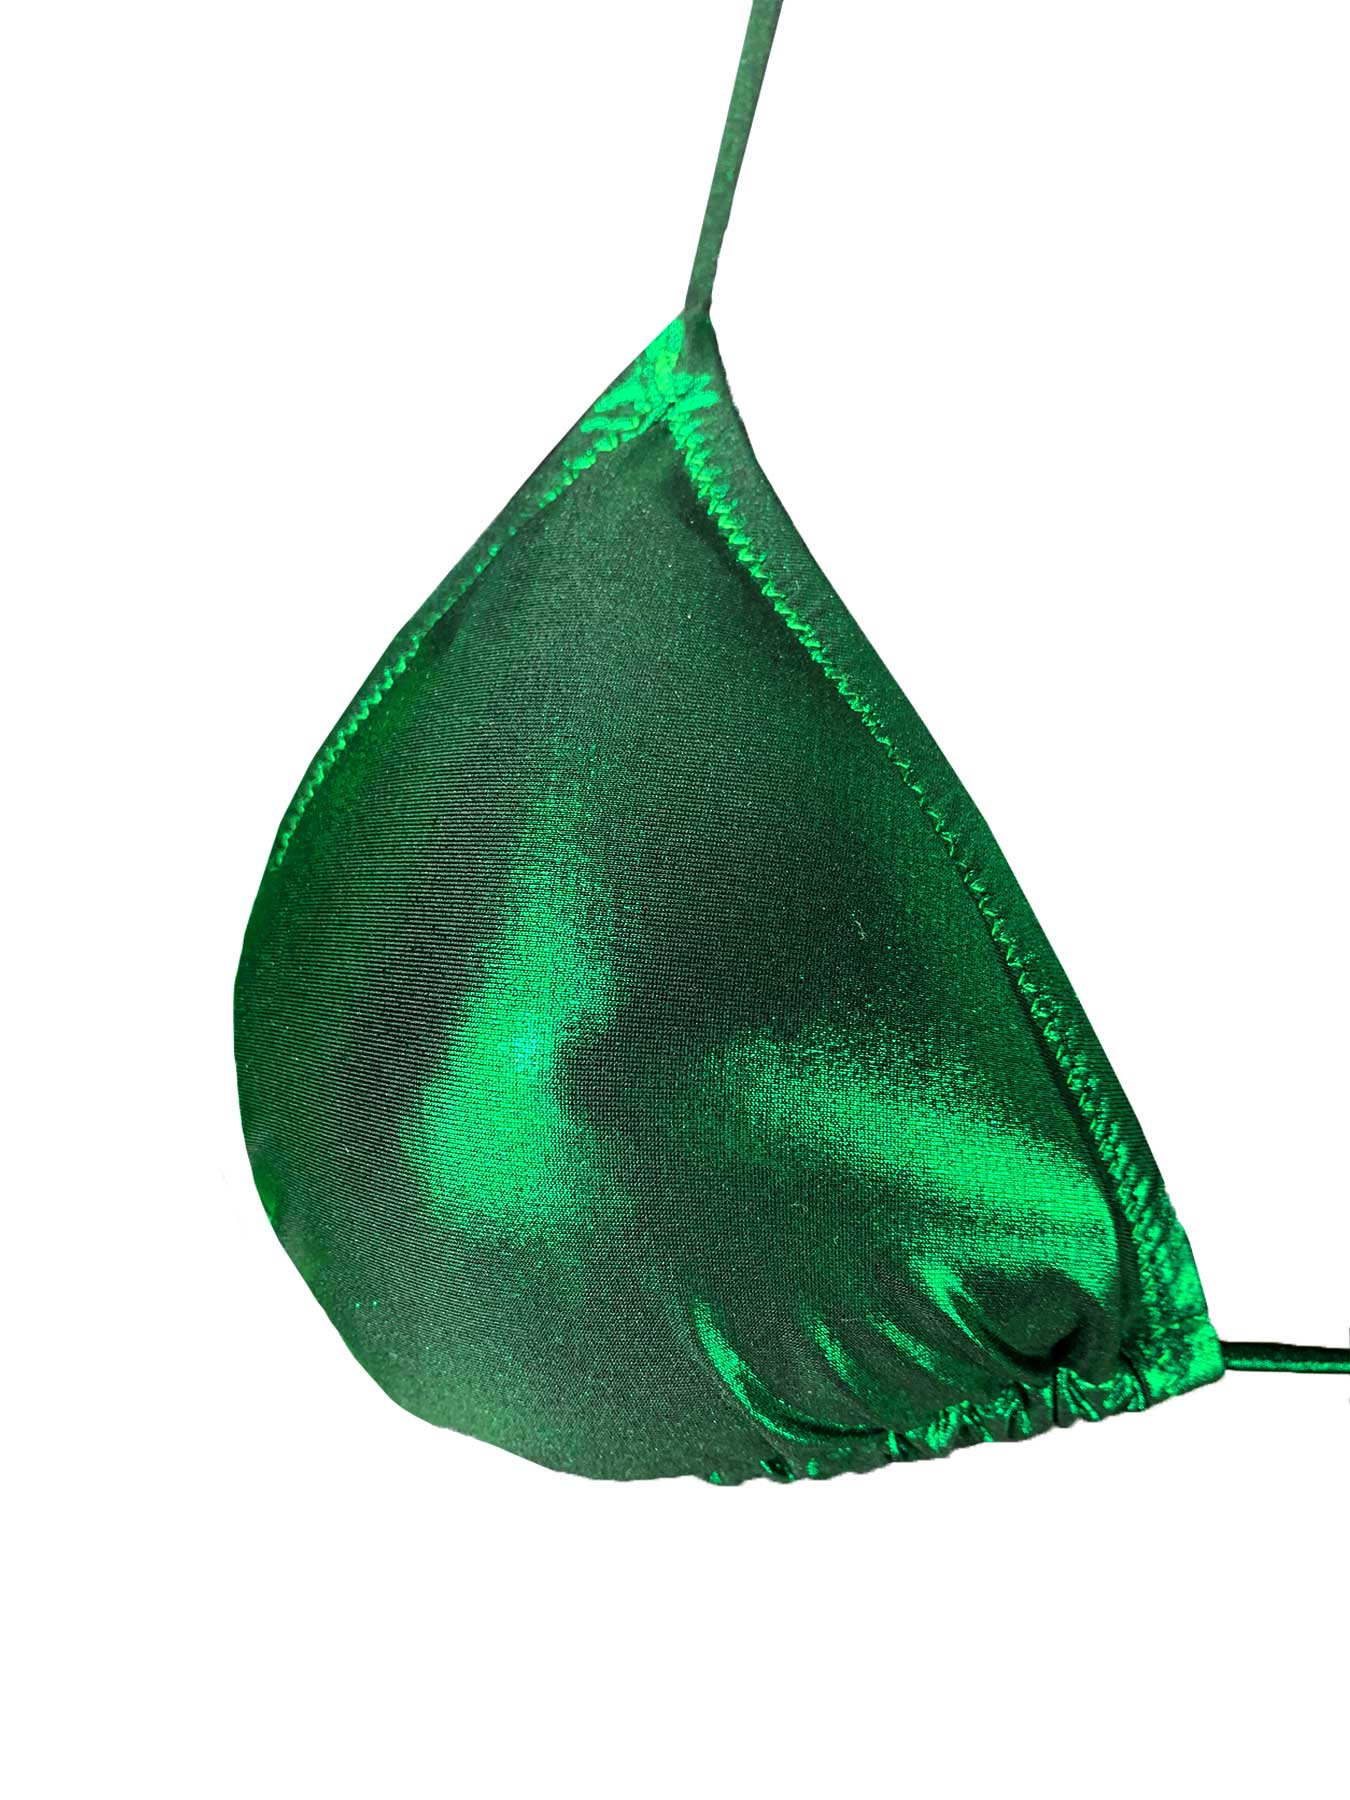 Bikini Triangolo Lamina Smeraldo Acqua di Cocco